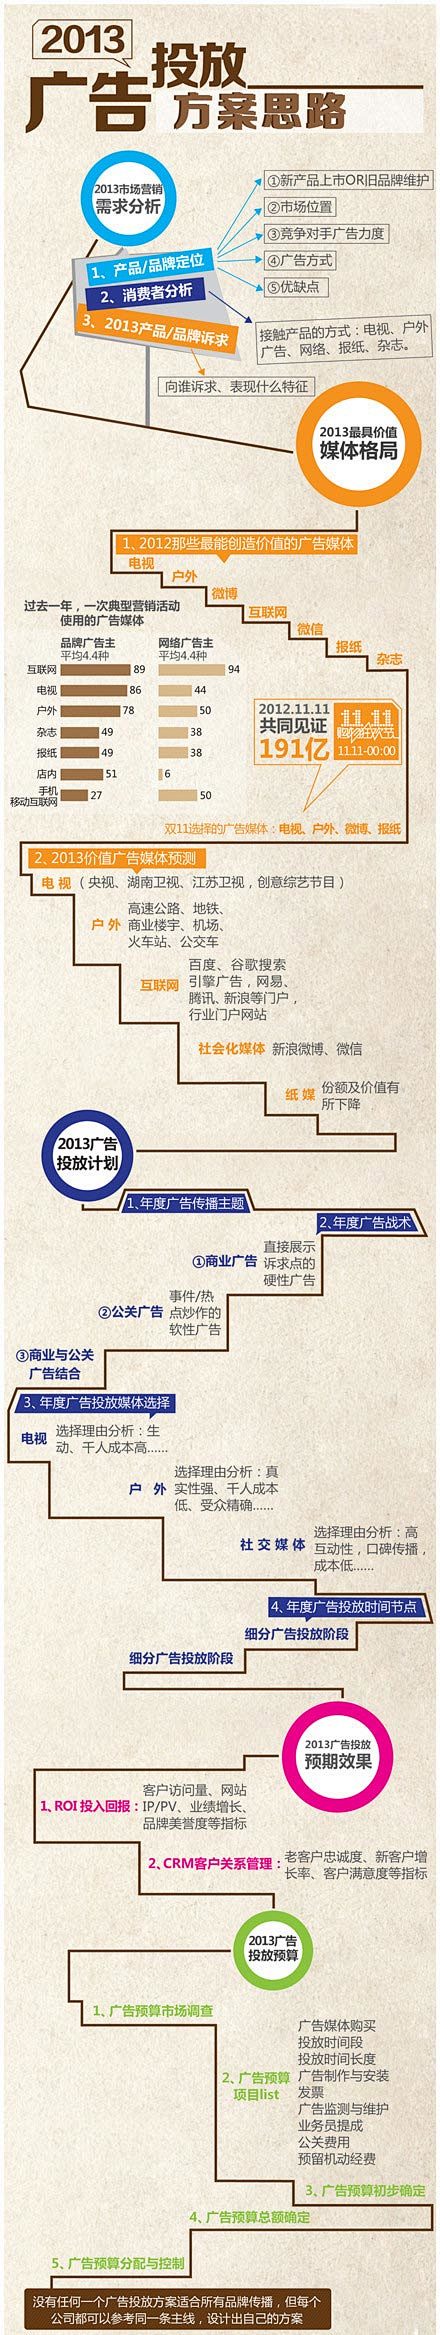 信息图：2013广告投放方案思路_广告门